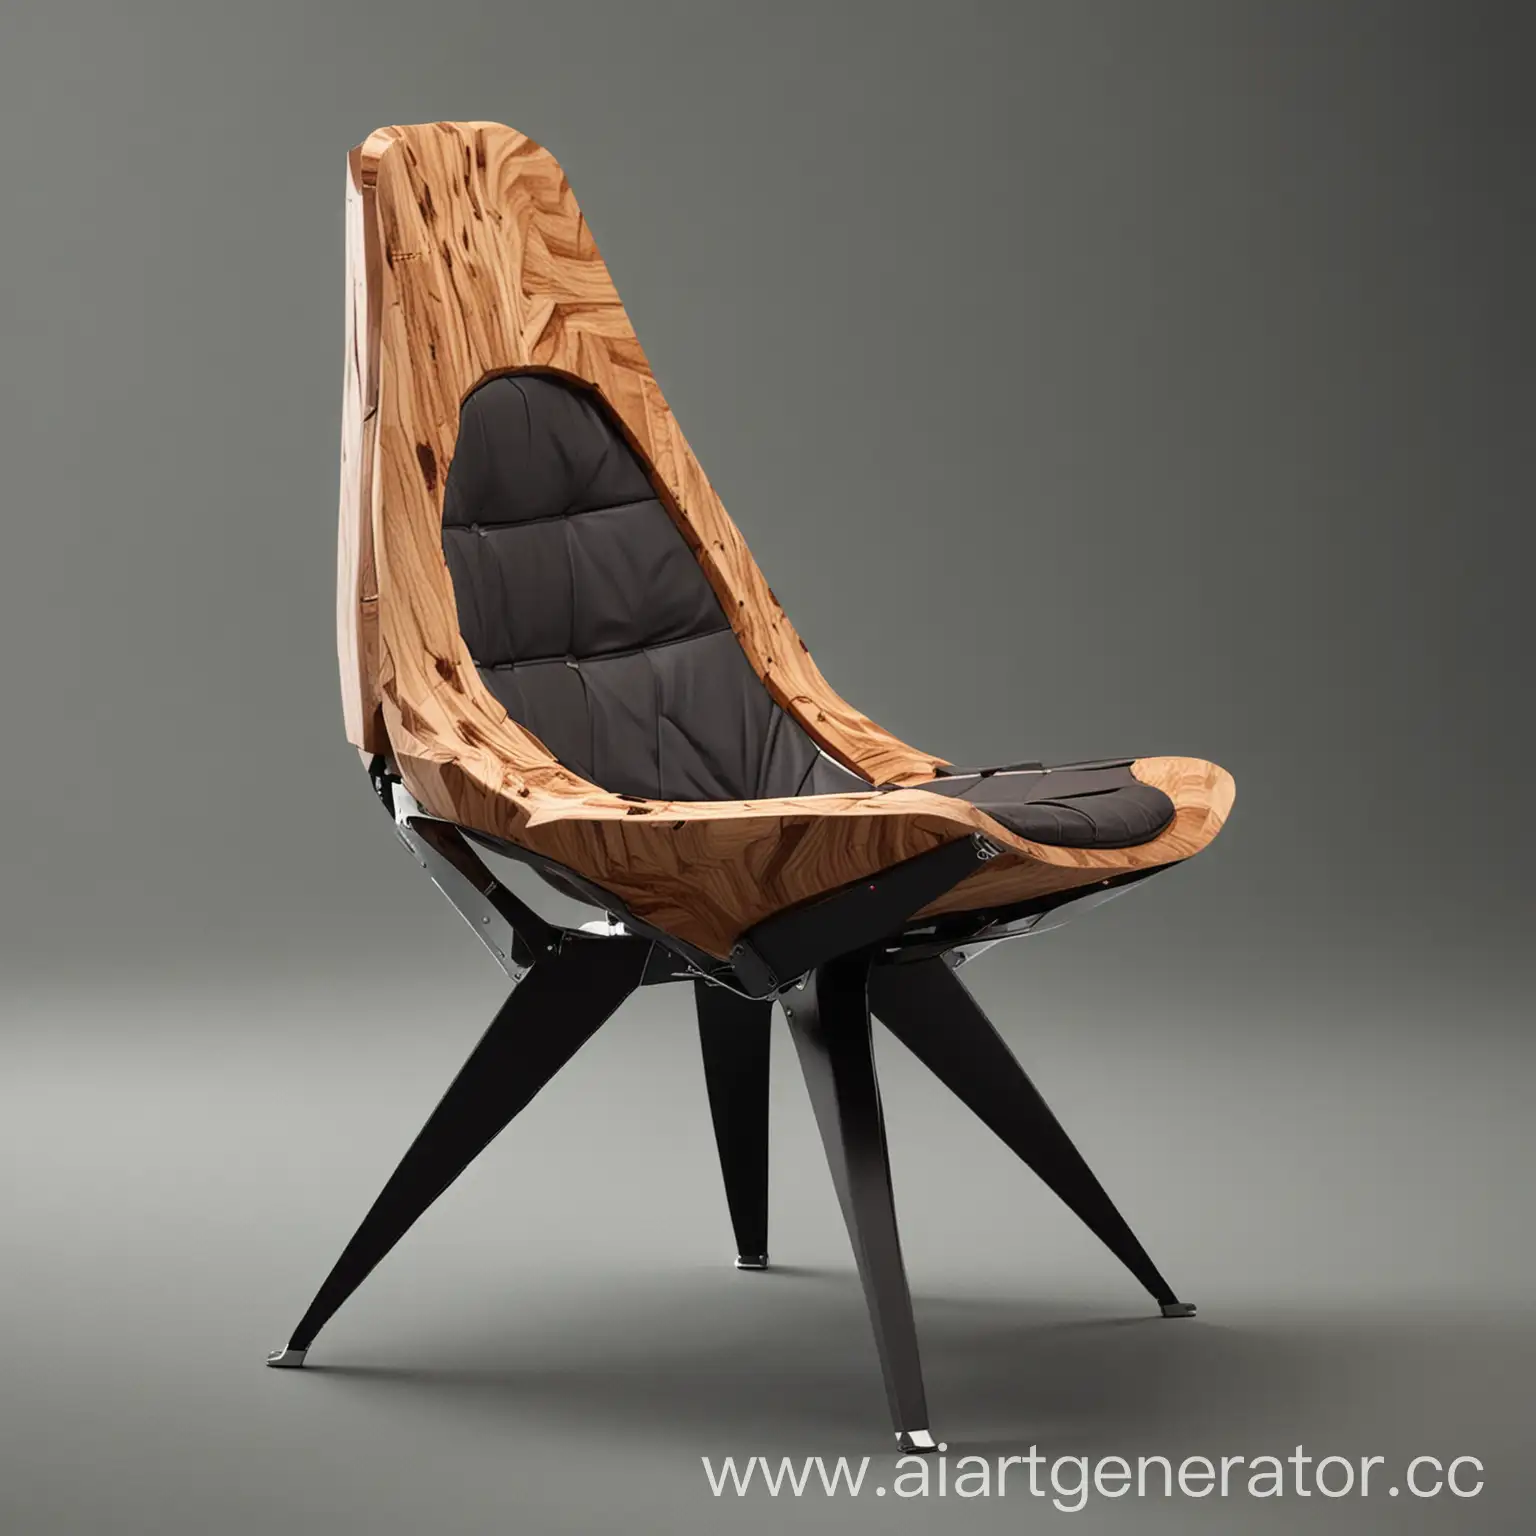 футуристическое кресло с применением древесины , алюминия и кожи